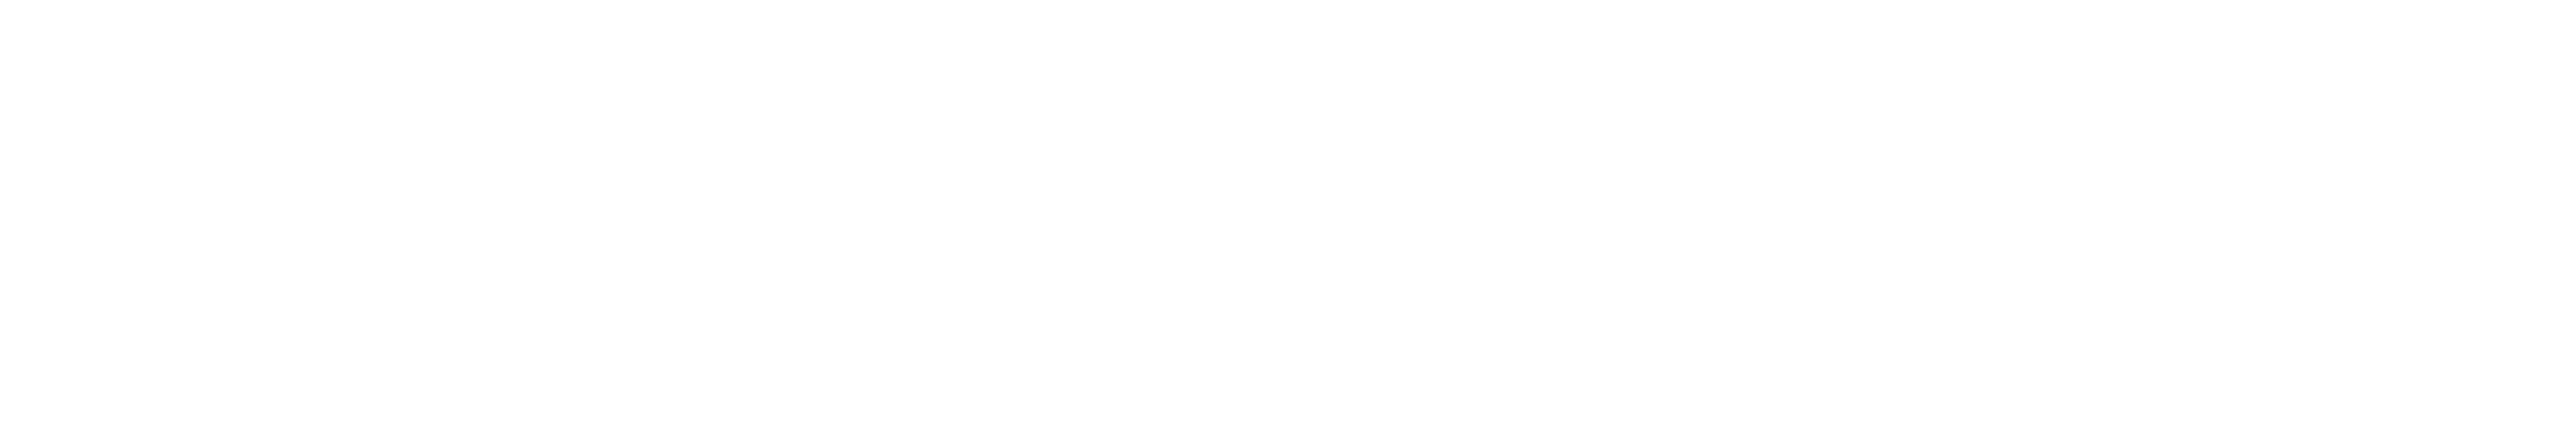 WandaVision logo